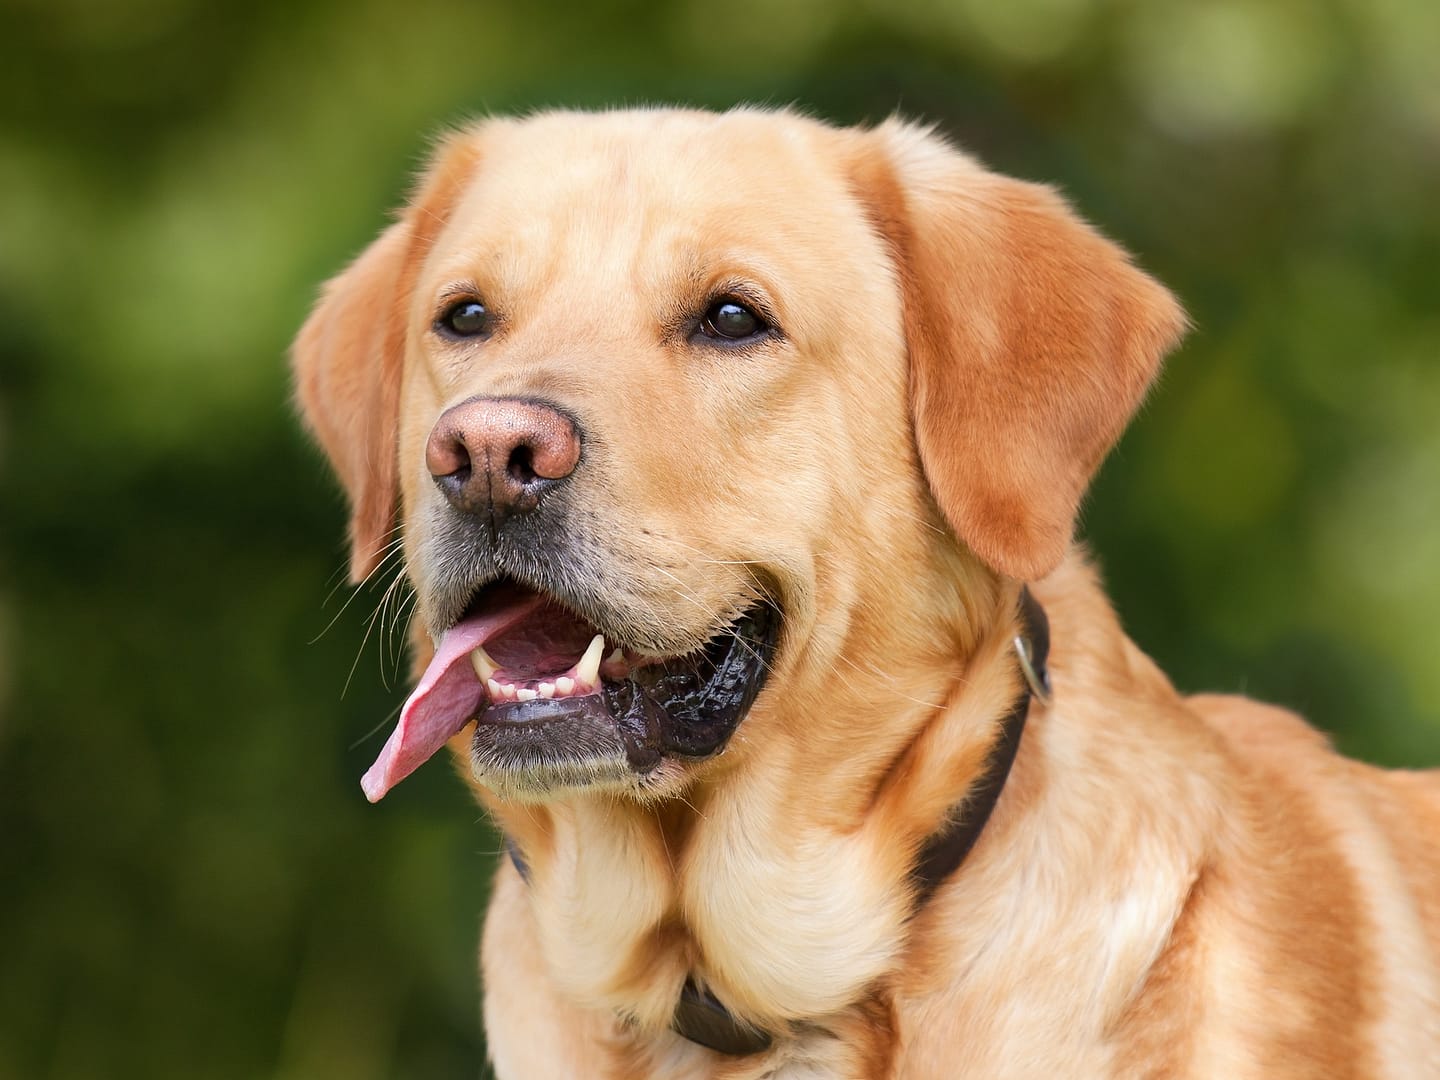 american dog breeds, dog , dog breeds , adopting a dog , dog adoption , bonevoyagedogrescue